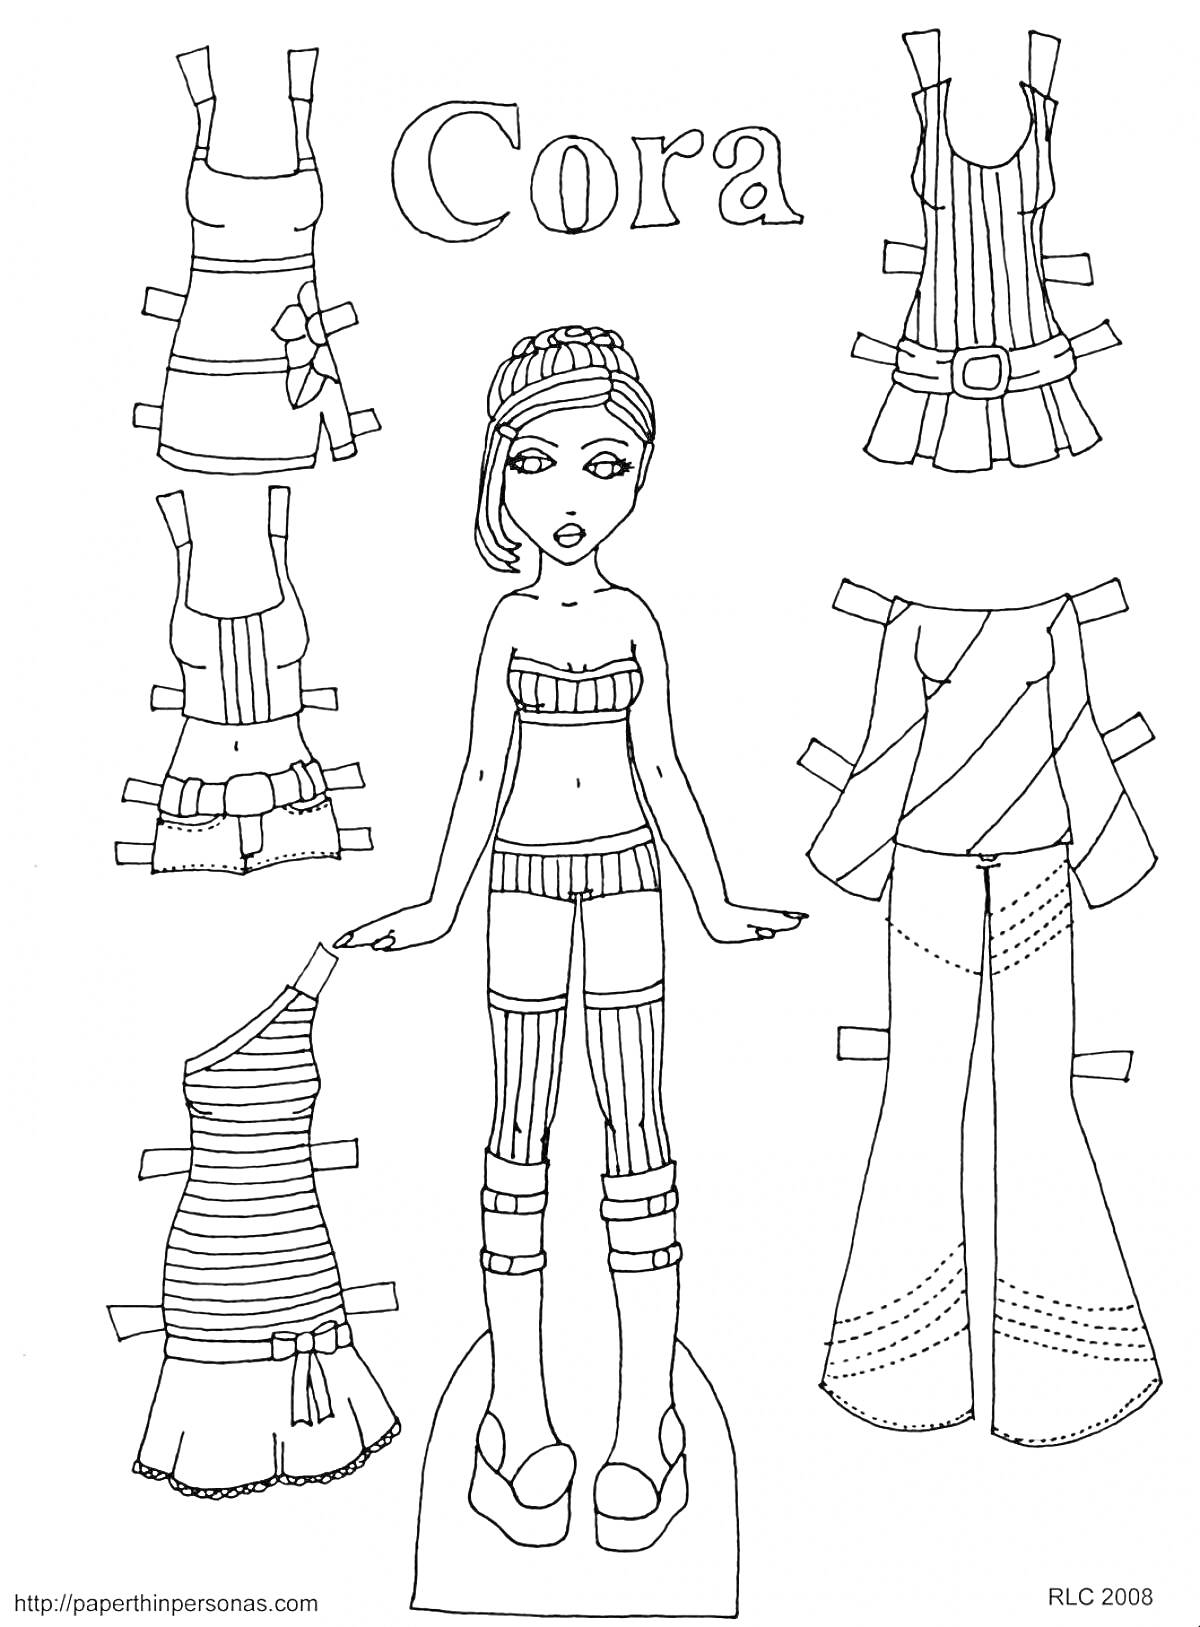 Раскраска Бумажная кукла с одеждой: сарафан, топ и юбка, футболка и брюки, топ и юбка в полоску, топ на одно плечо и юбка, длинные брюки